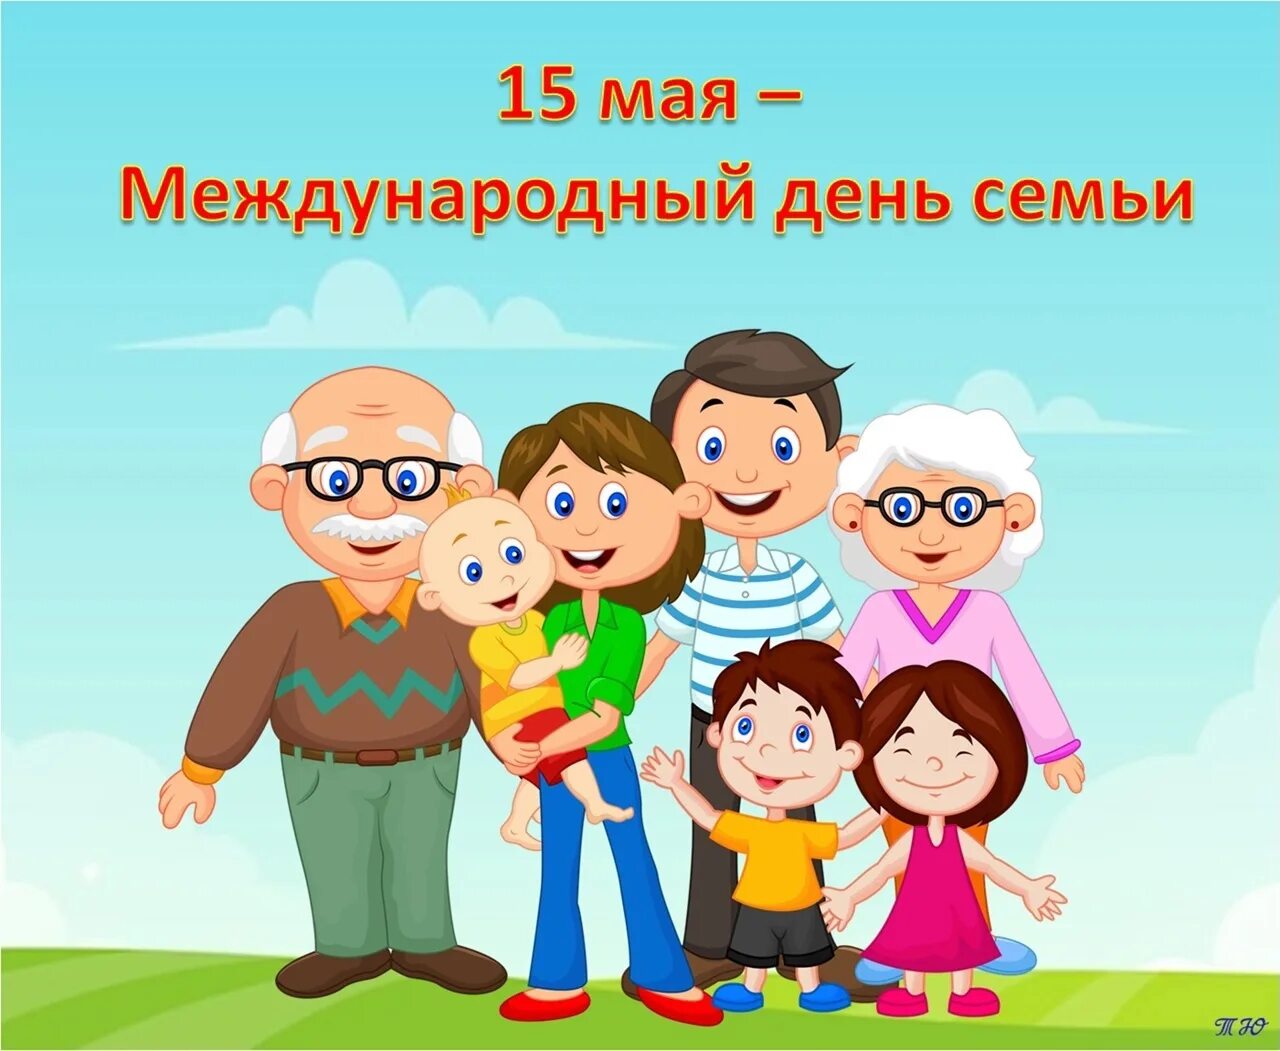 Международный день семьи. День семьи 15 мая. Международный день семьи (International Day of Families). Международный день семьи картинки. 15 мая 2023 г